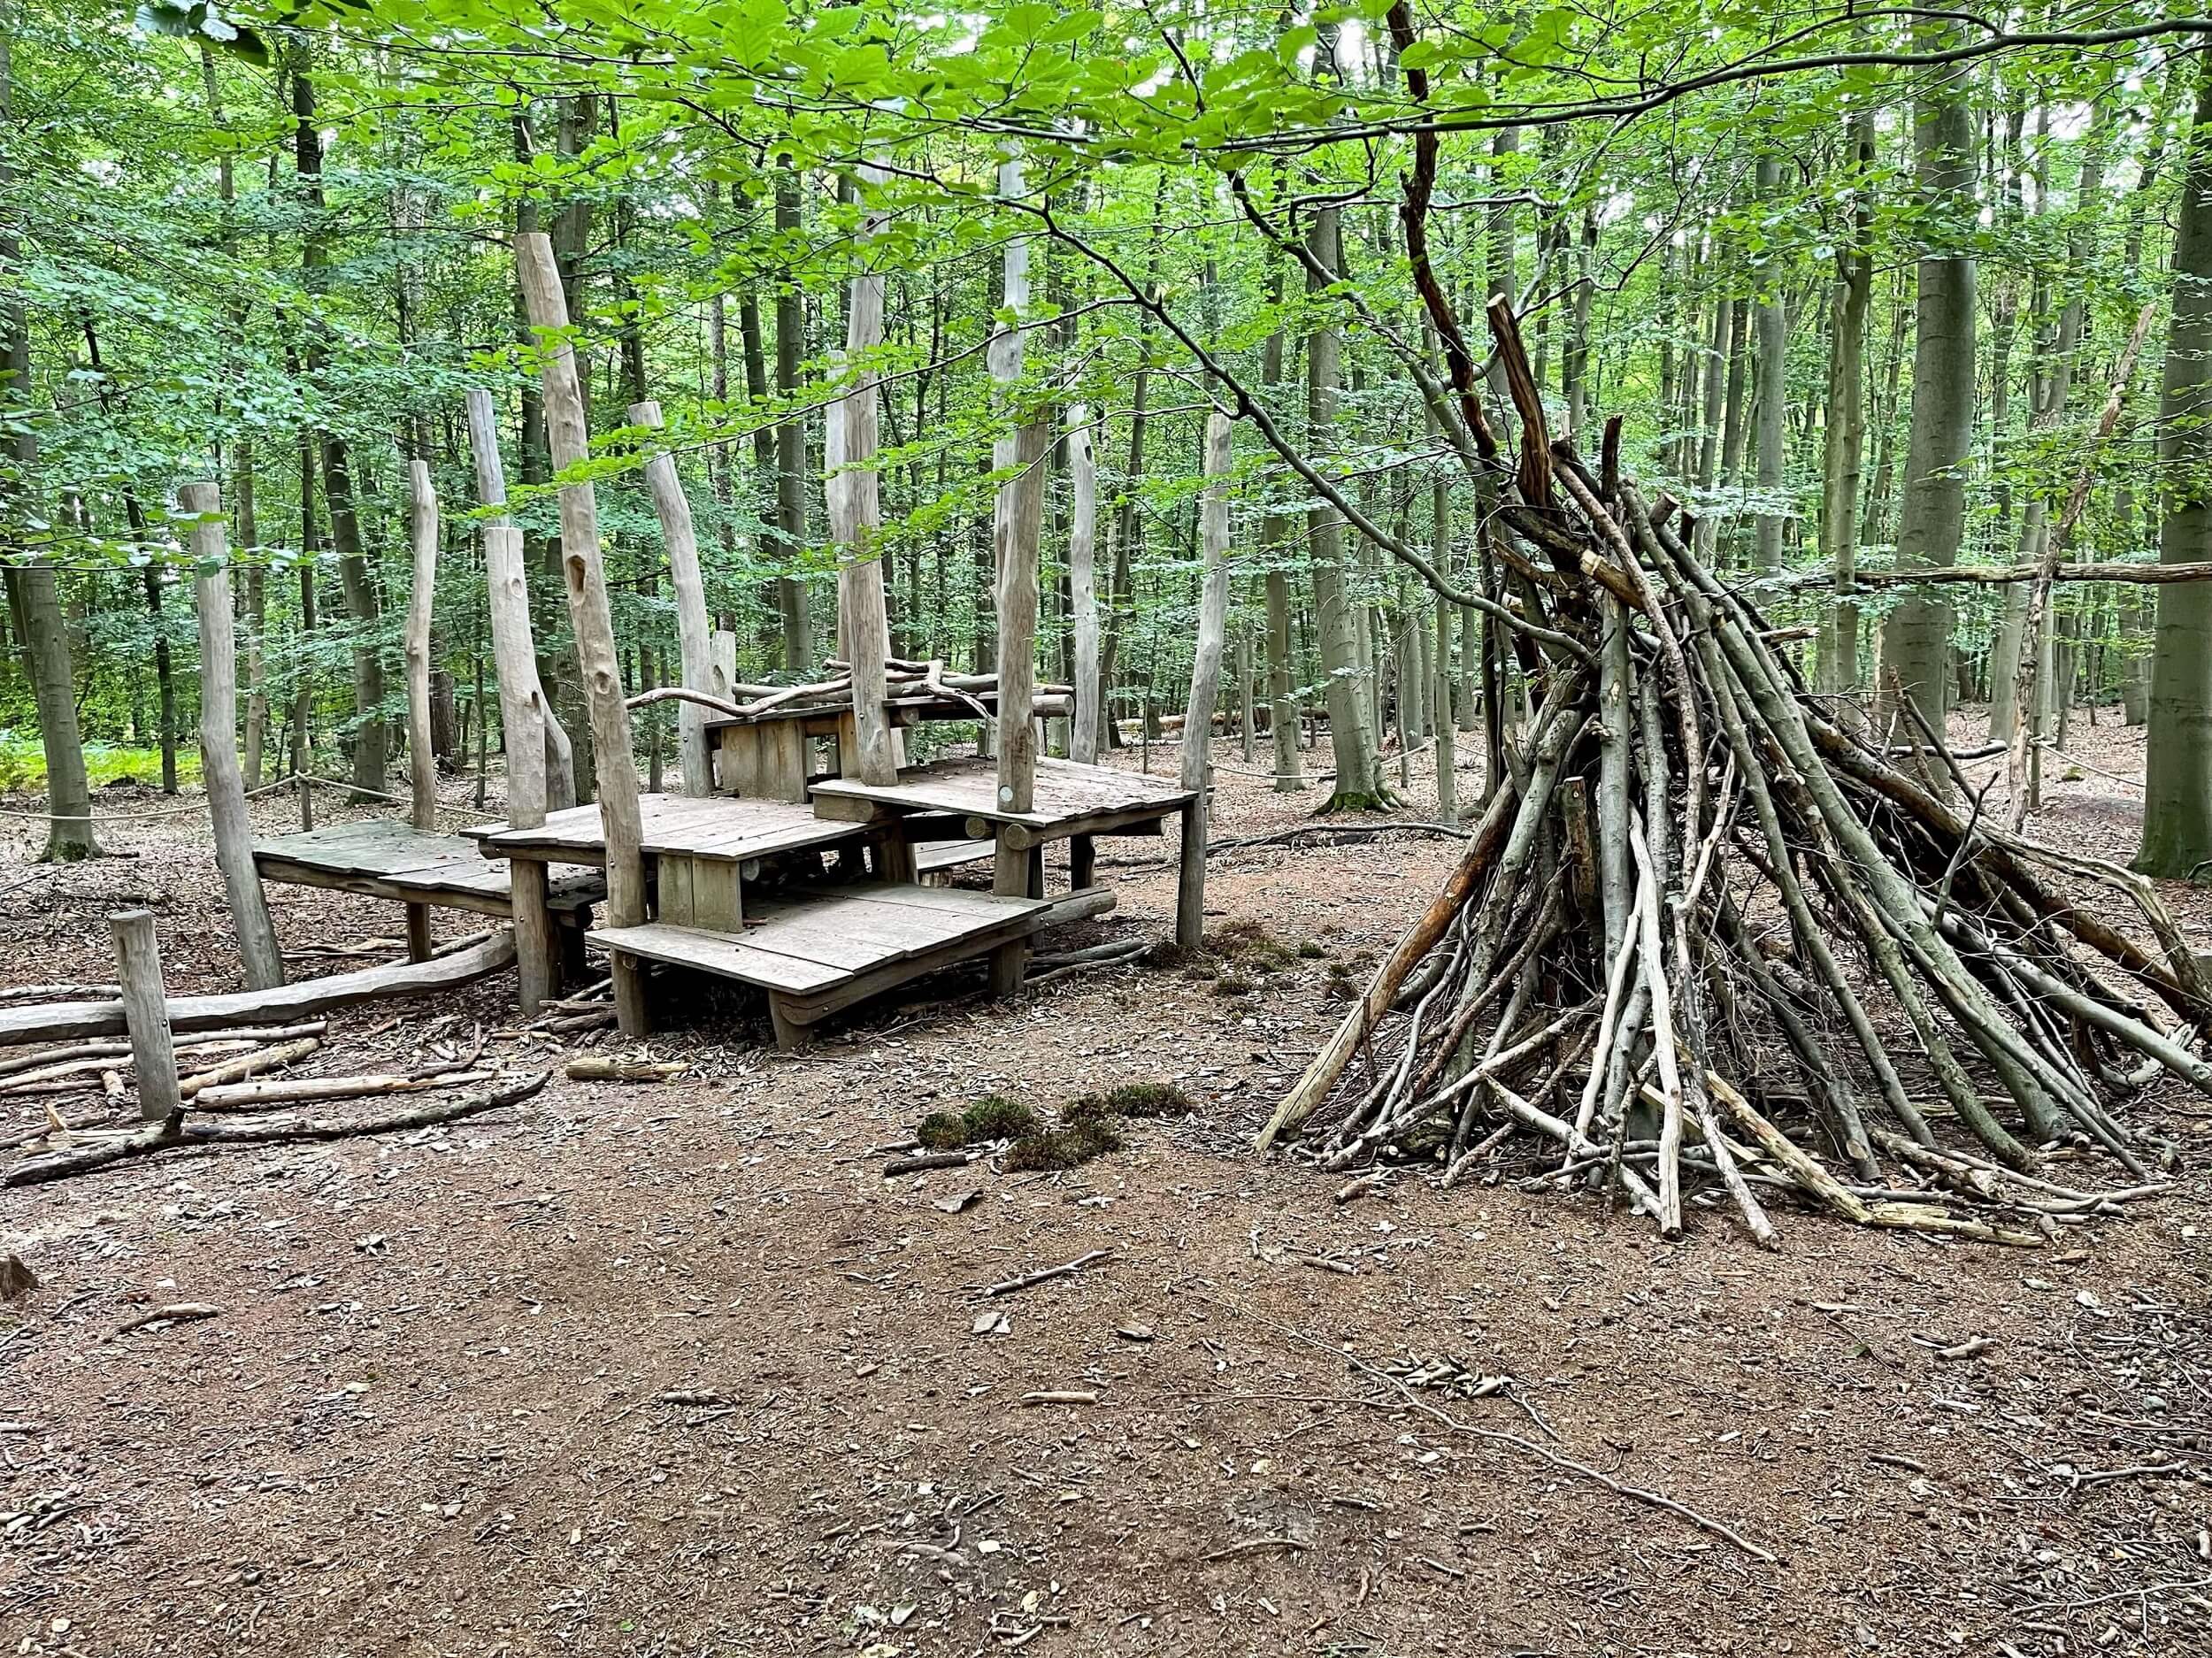 Aus Ästen wurde im Wald ein Zelt gebaut, das neben einem aus Holz gebautem Spielbereich für Kinder steht.